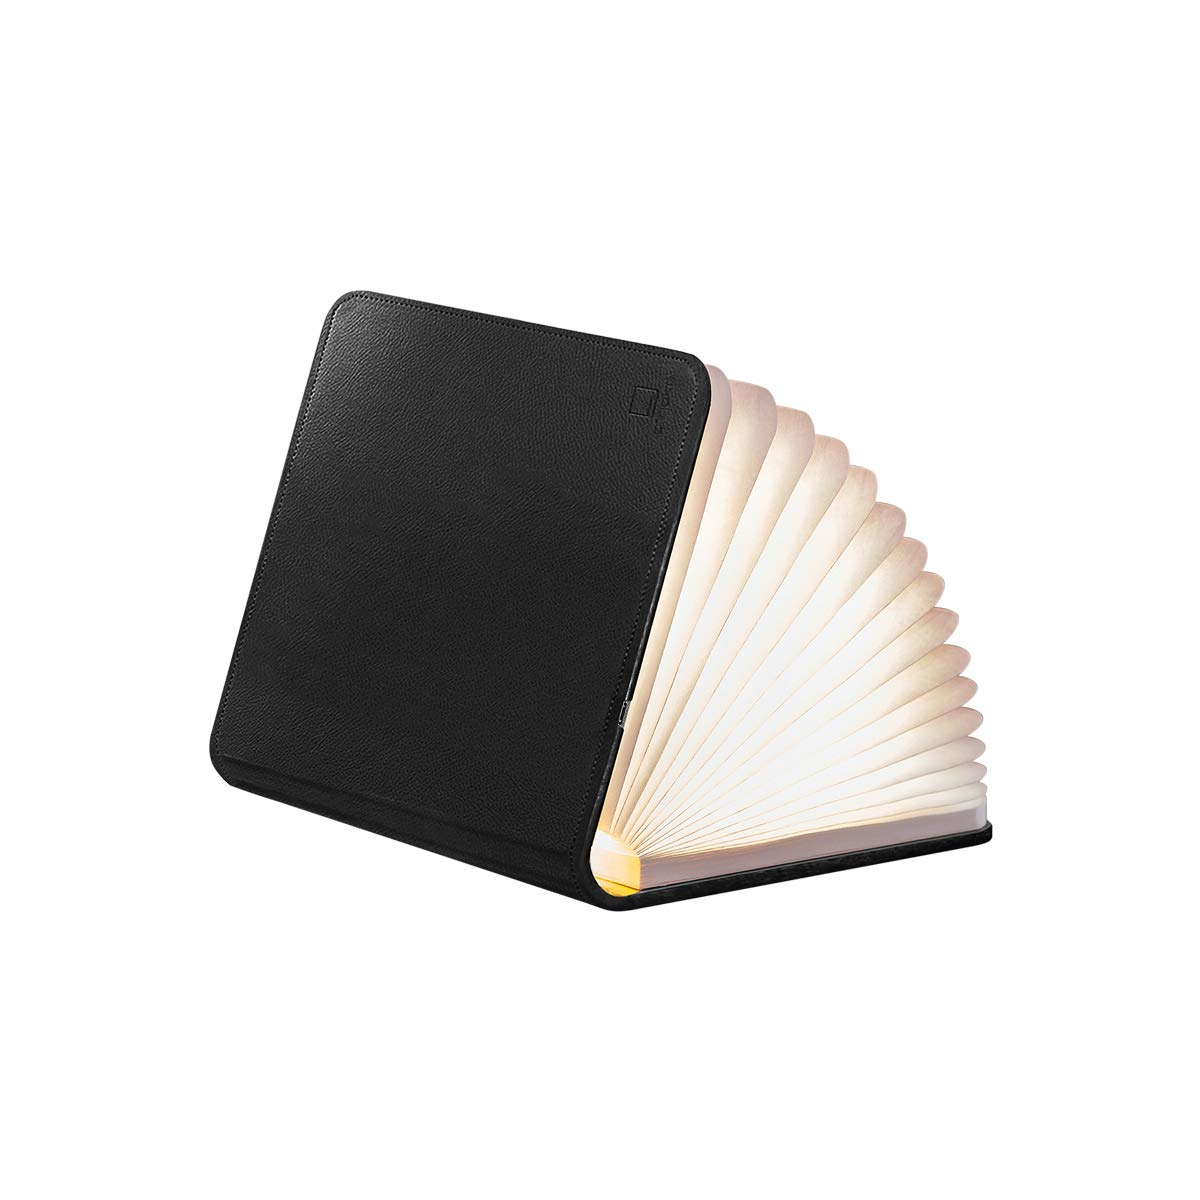 Összecsukható lámpa "Smart Book" mini, fekete bőr - Gingko